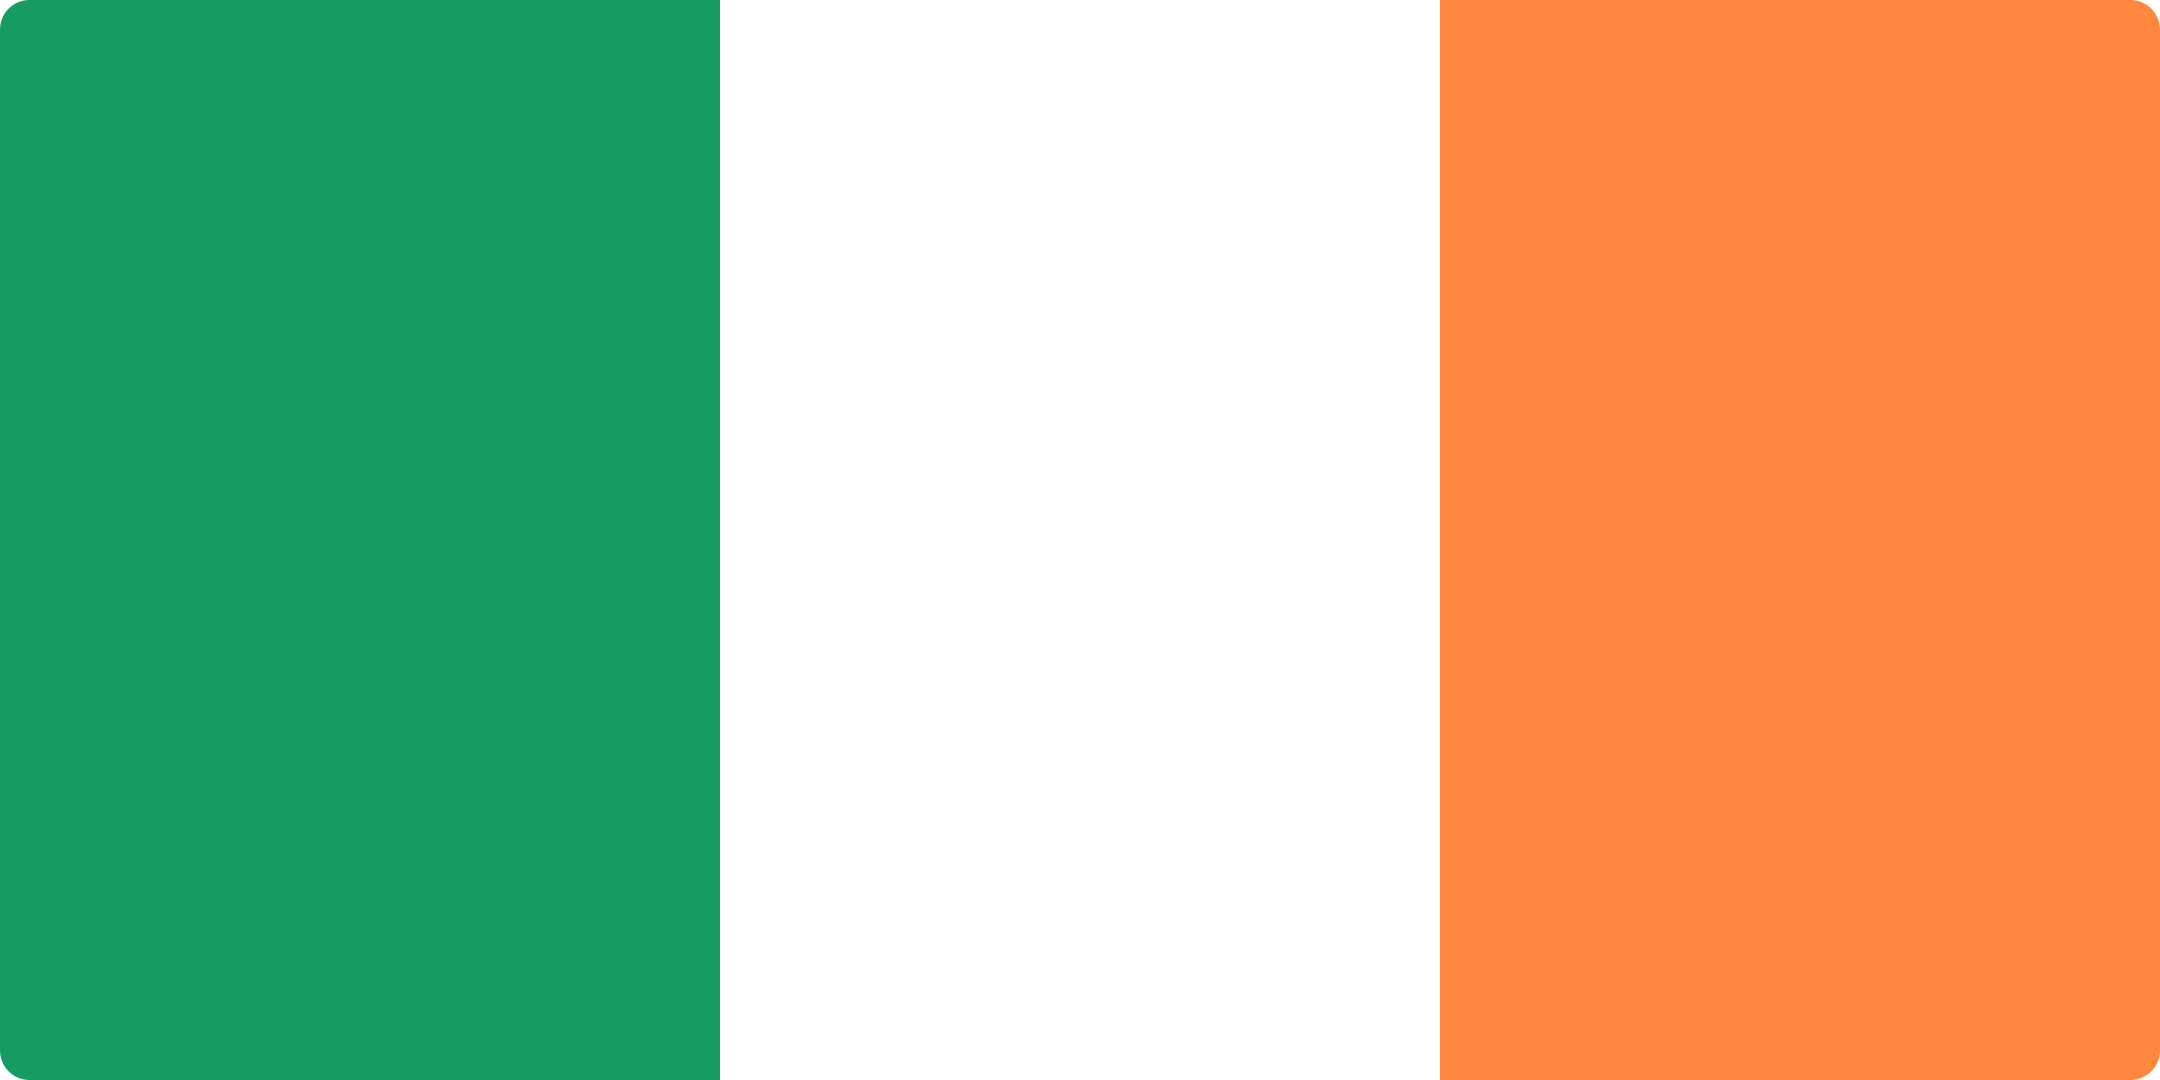 bandeira ireland flag 1 - Flag of Ireland